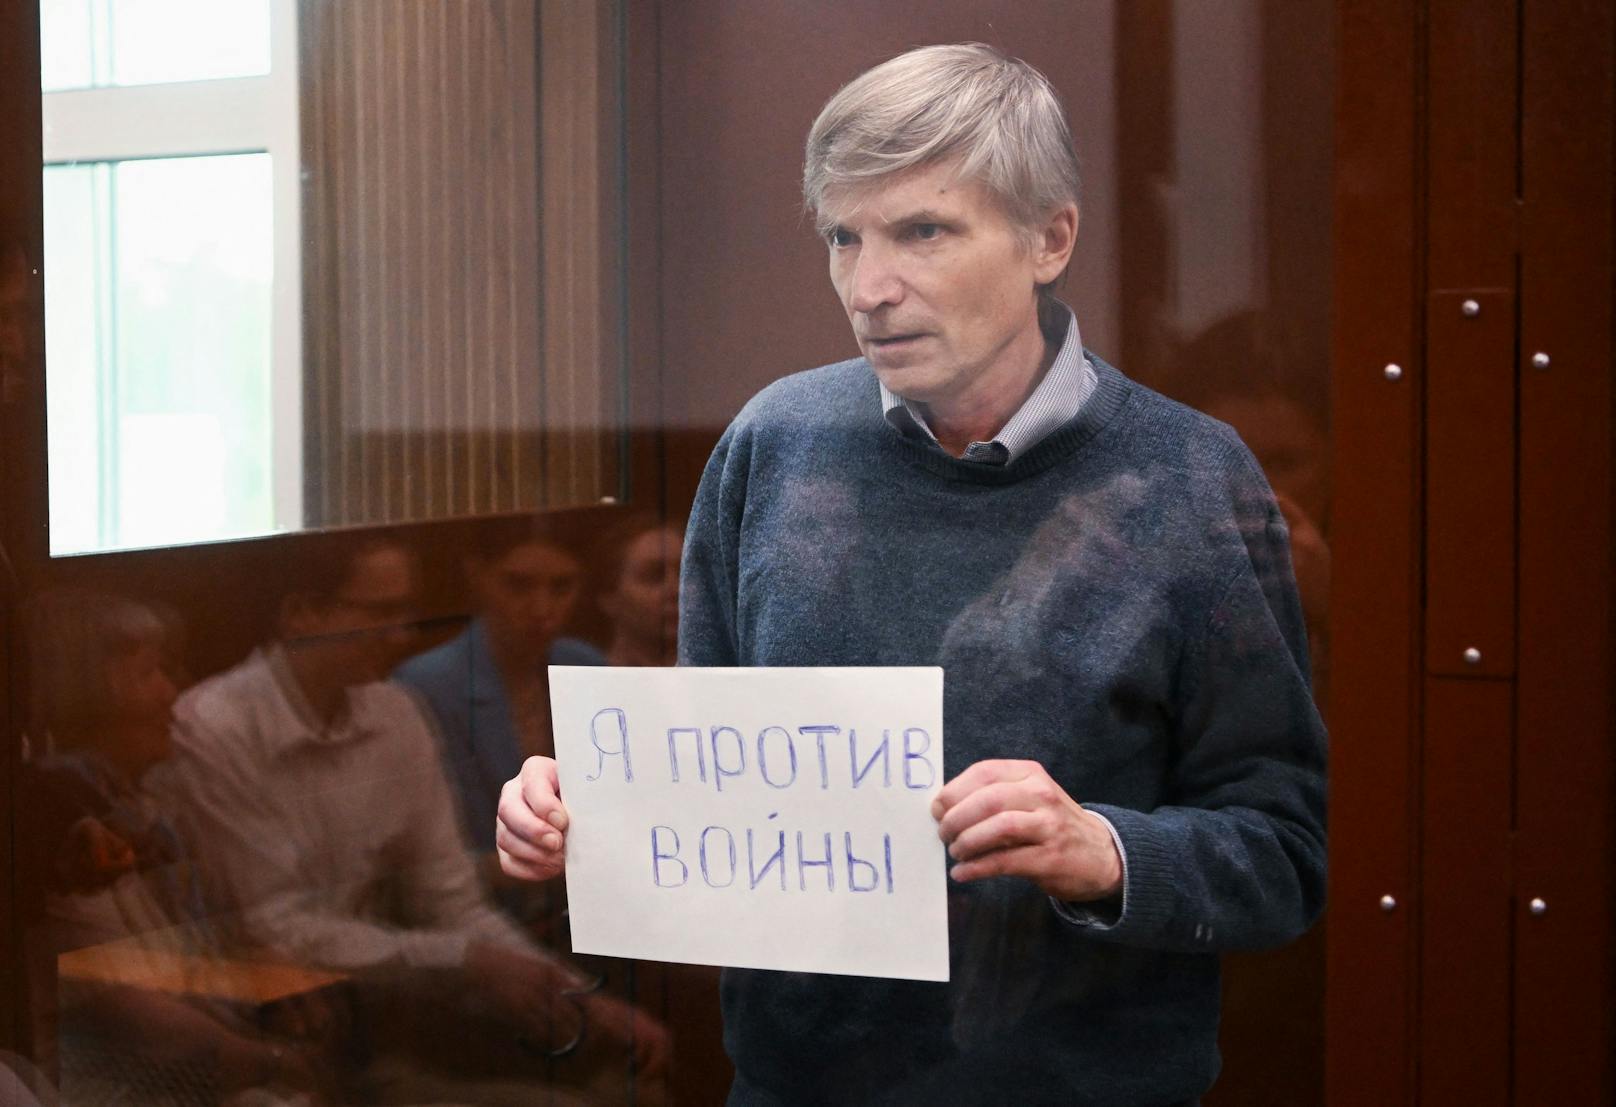 In Moskau steht nun ein Kommunalpolitiker, der sich kritisch zum Krieg in der Ukraine geäußert hatte, vor Gericht.